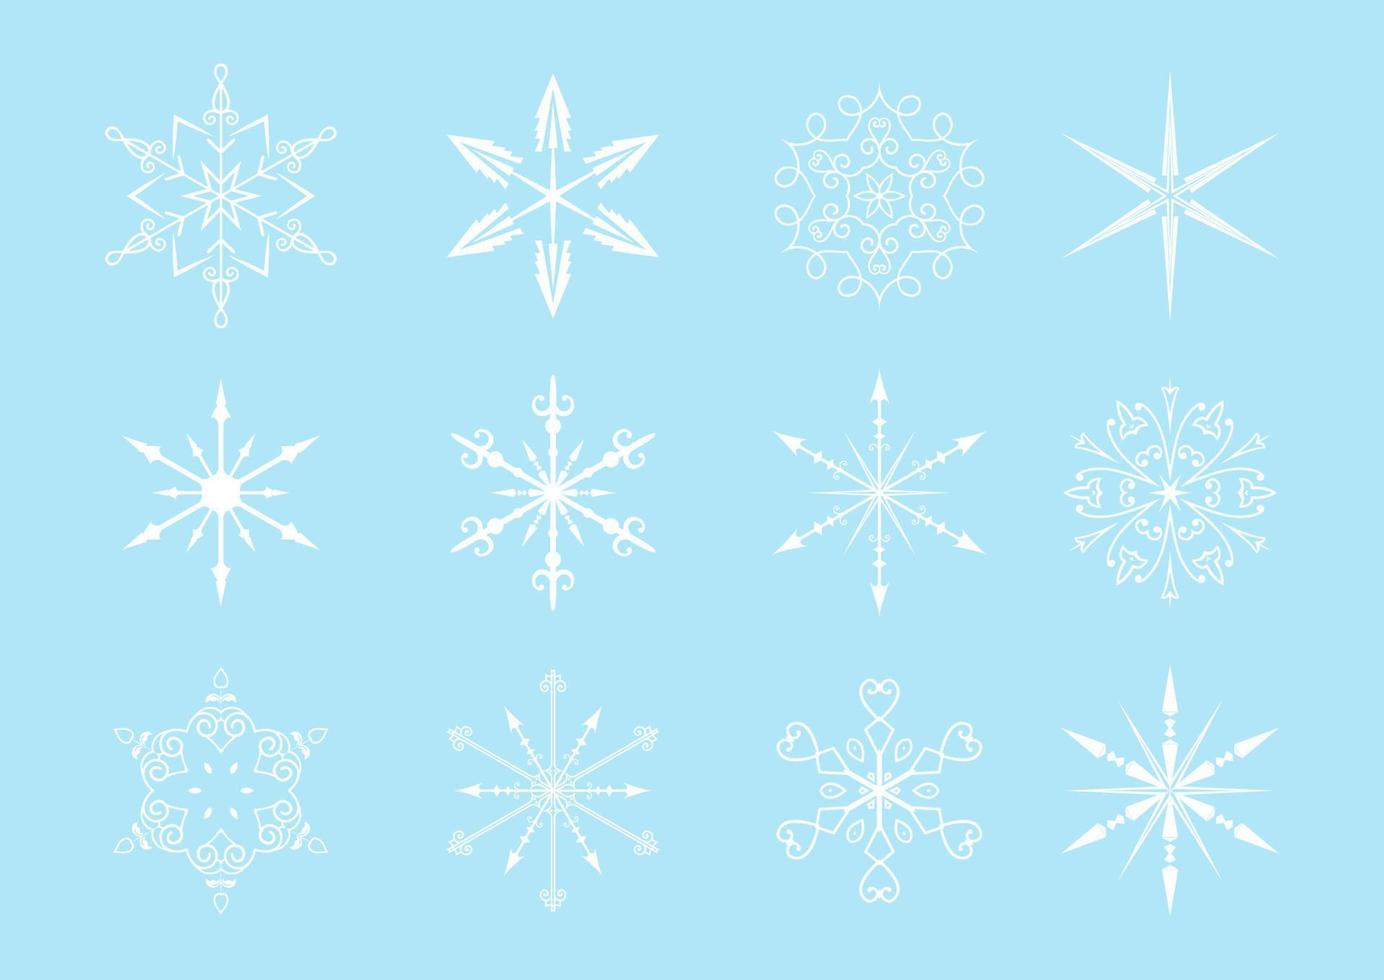 Sammlung dekorativer Schneeflocken vektor